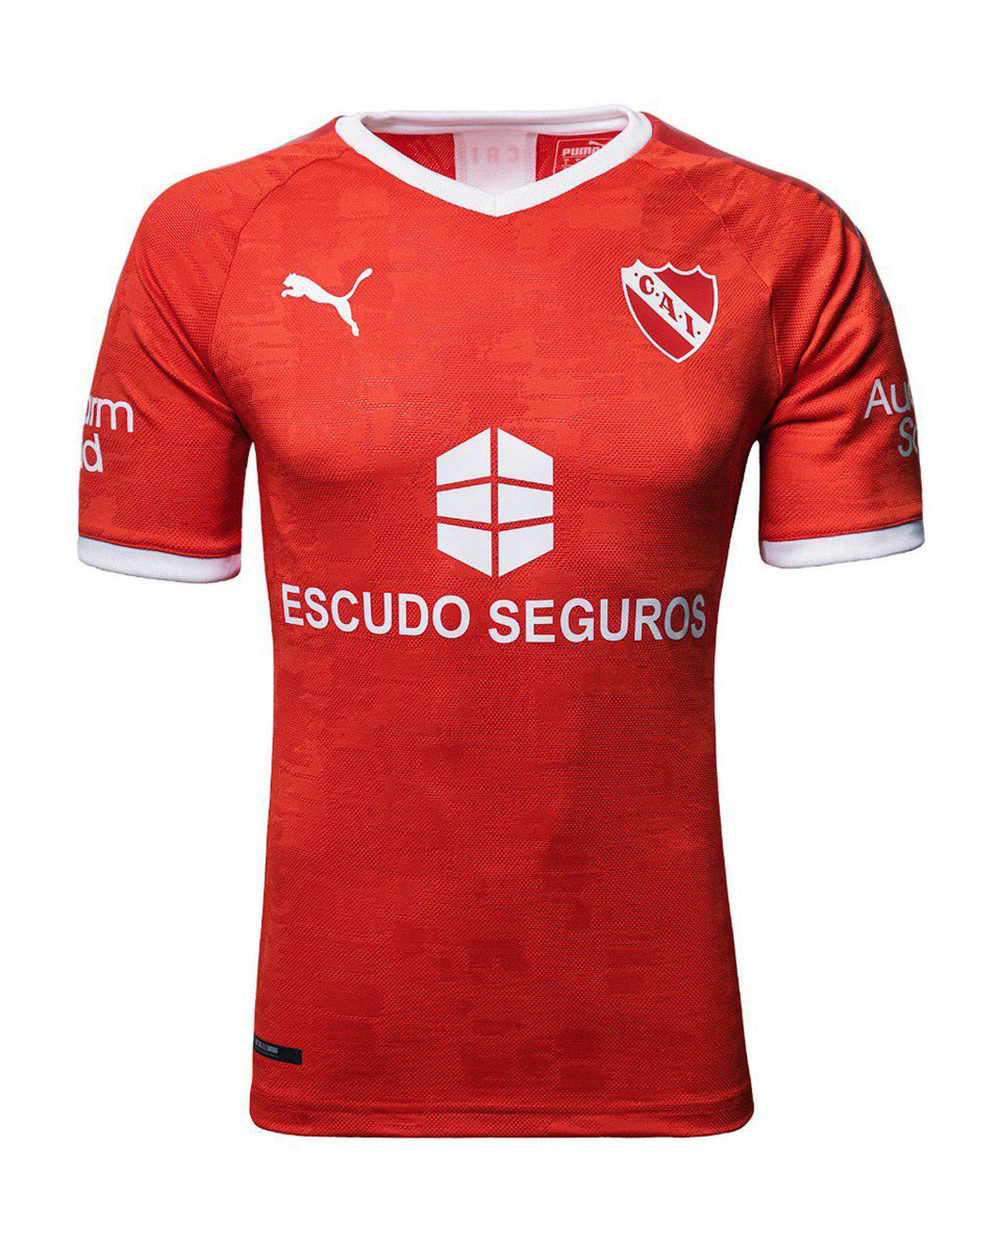 Camiseta titular PUMA de Independiente 2019 2020